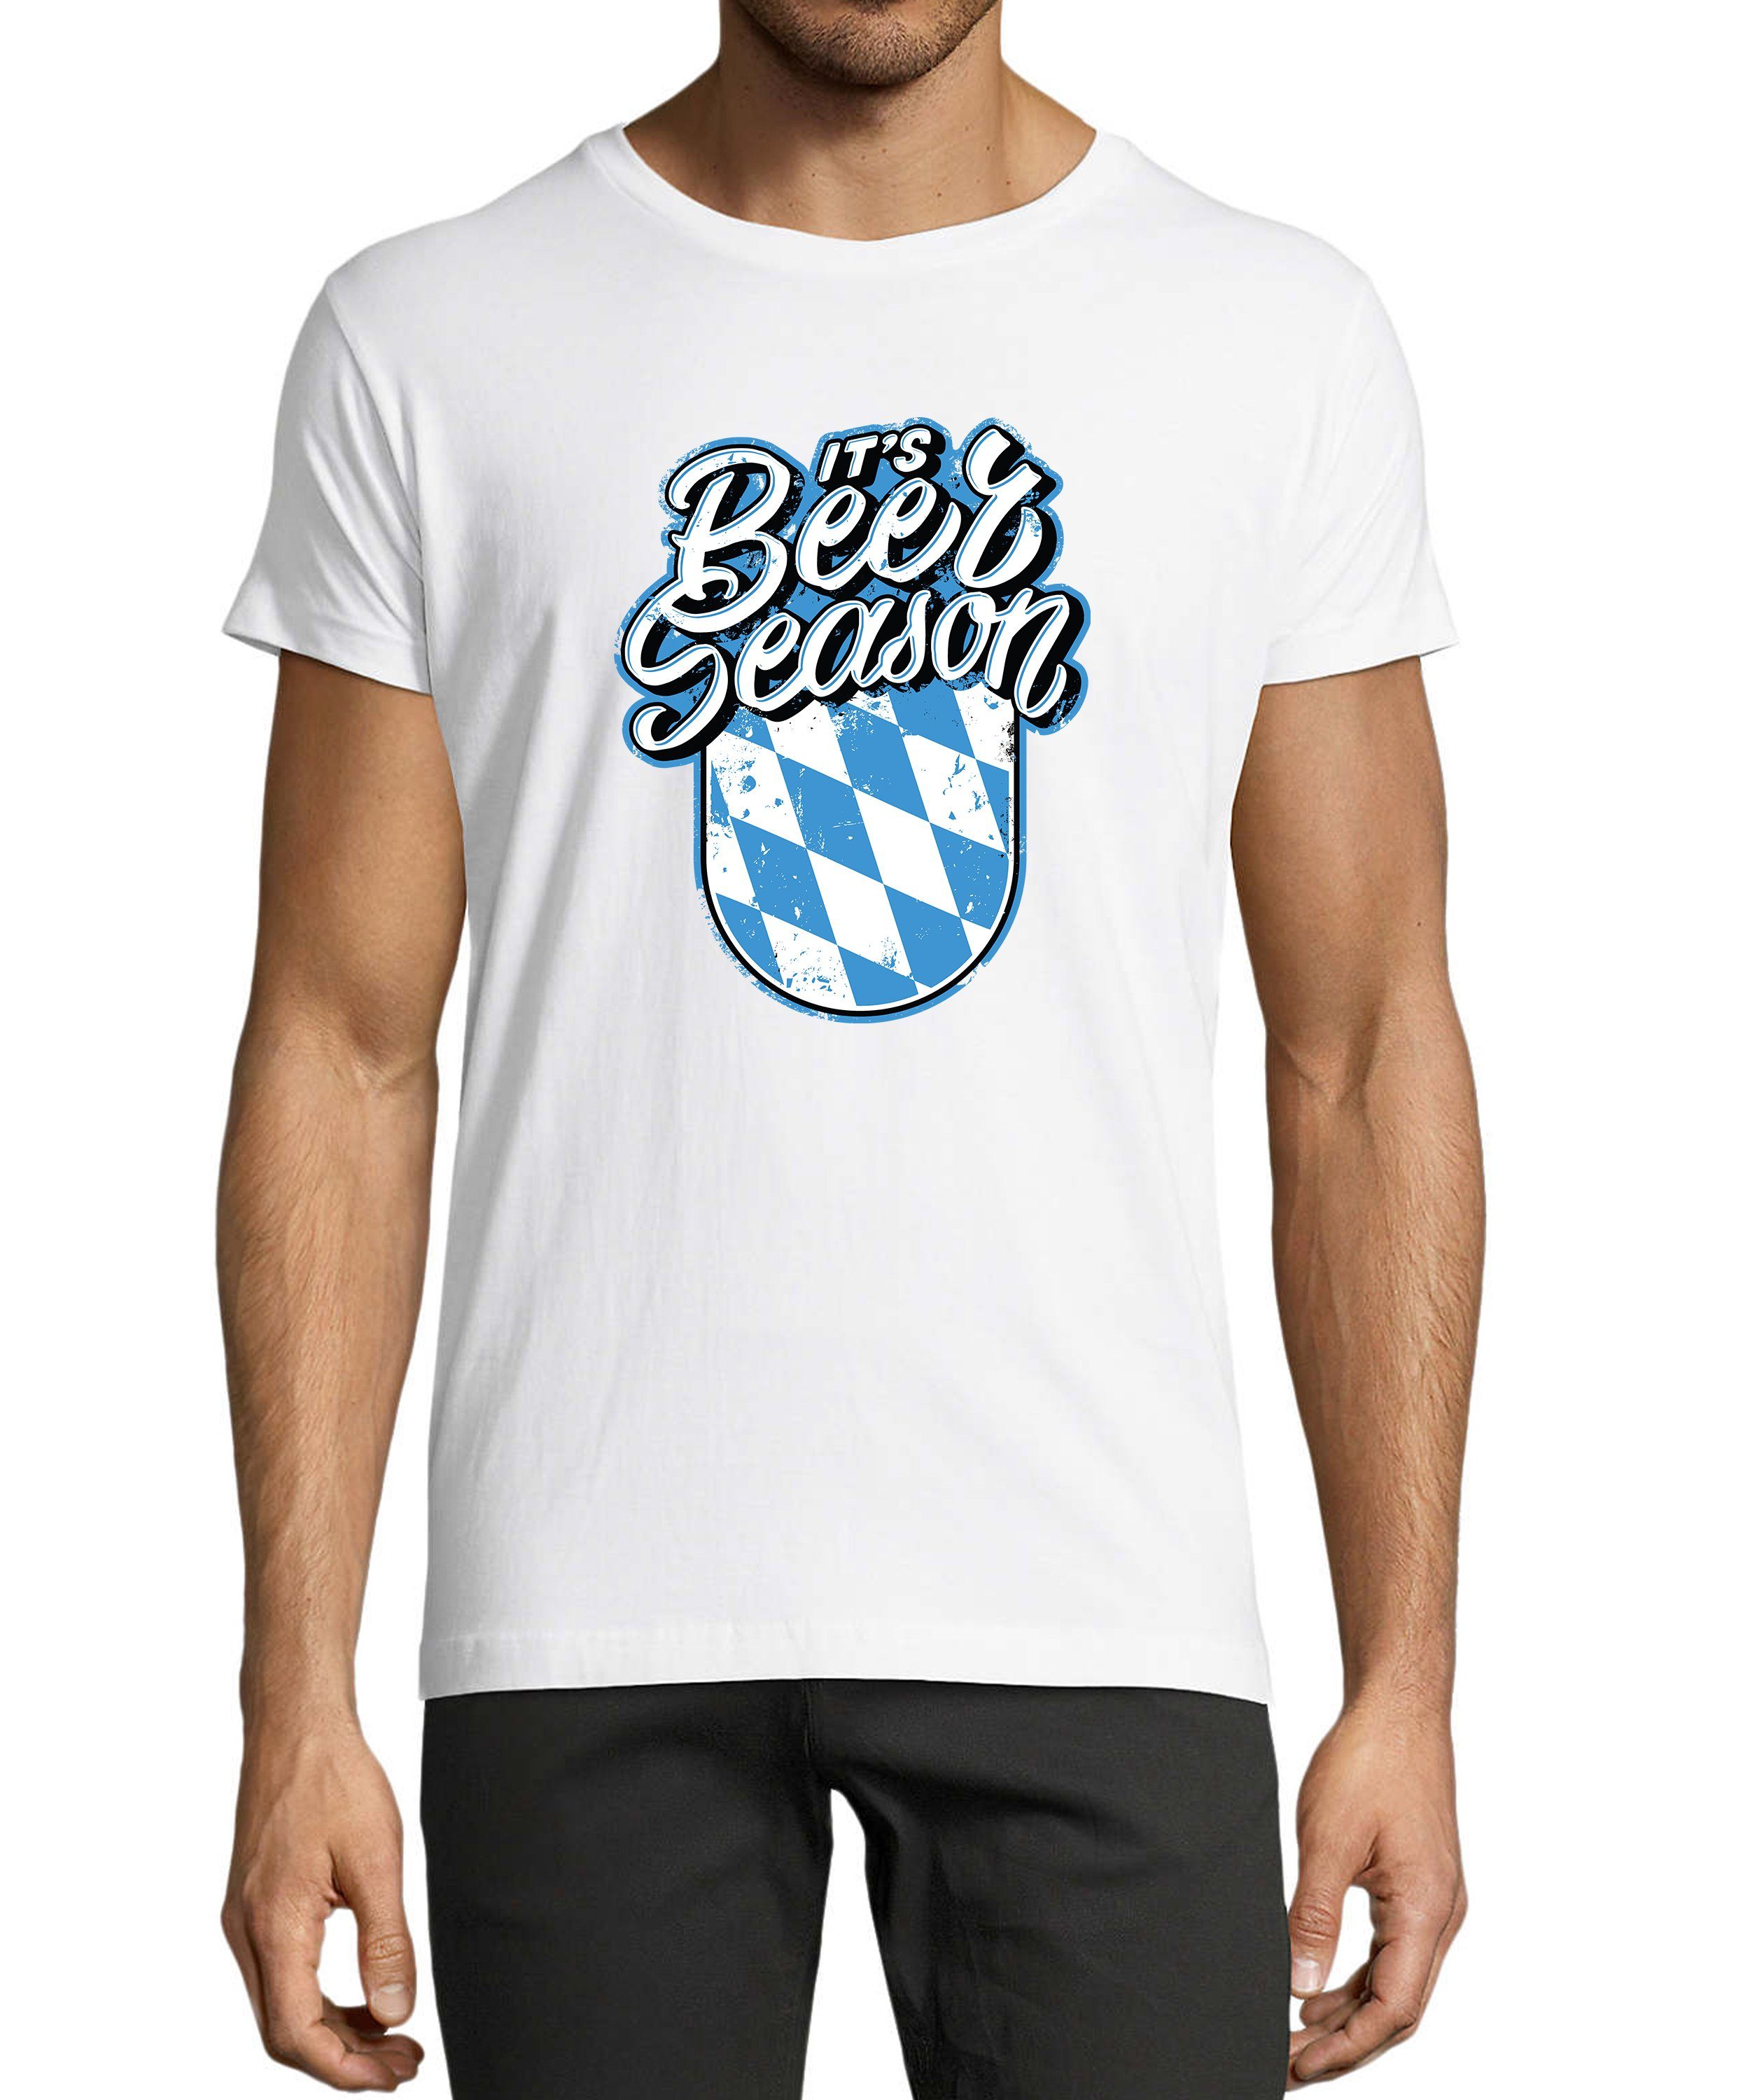 MyDesign24 T-Shirt Herren Fun Print Shirt - Oktoberfest Trinkshirt its Beer Season Baumwollshirt mit Aufdruck Regular Fit, i303 weiss